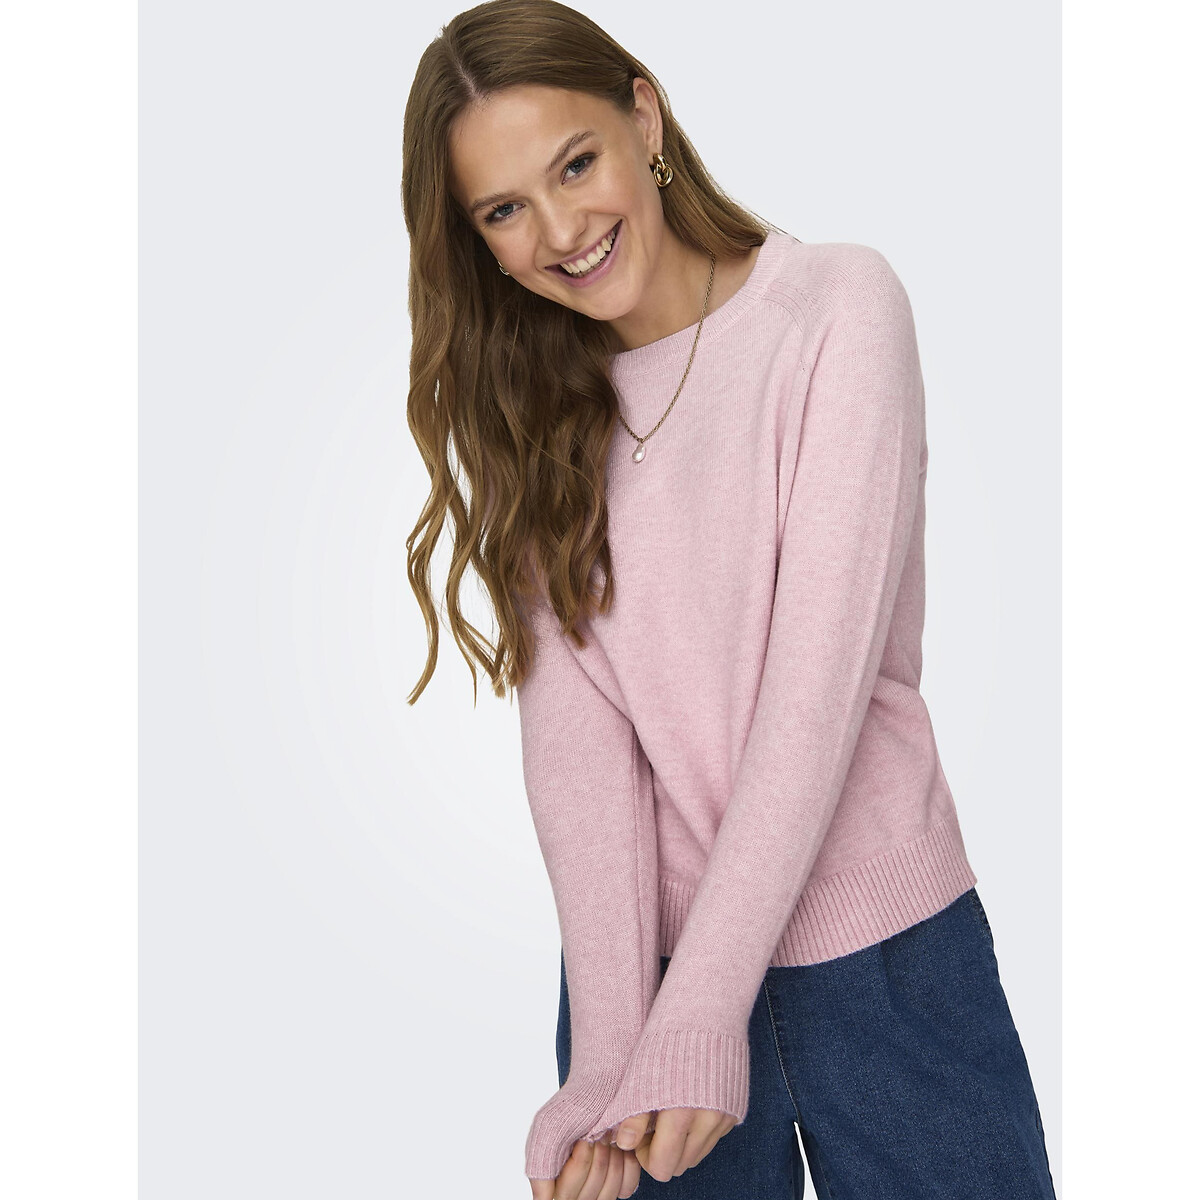 Пуловер с круглым вырезом S розовый пуловер двухцветный с круглым вырезом pagaville xs s синий